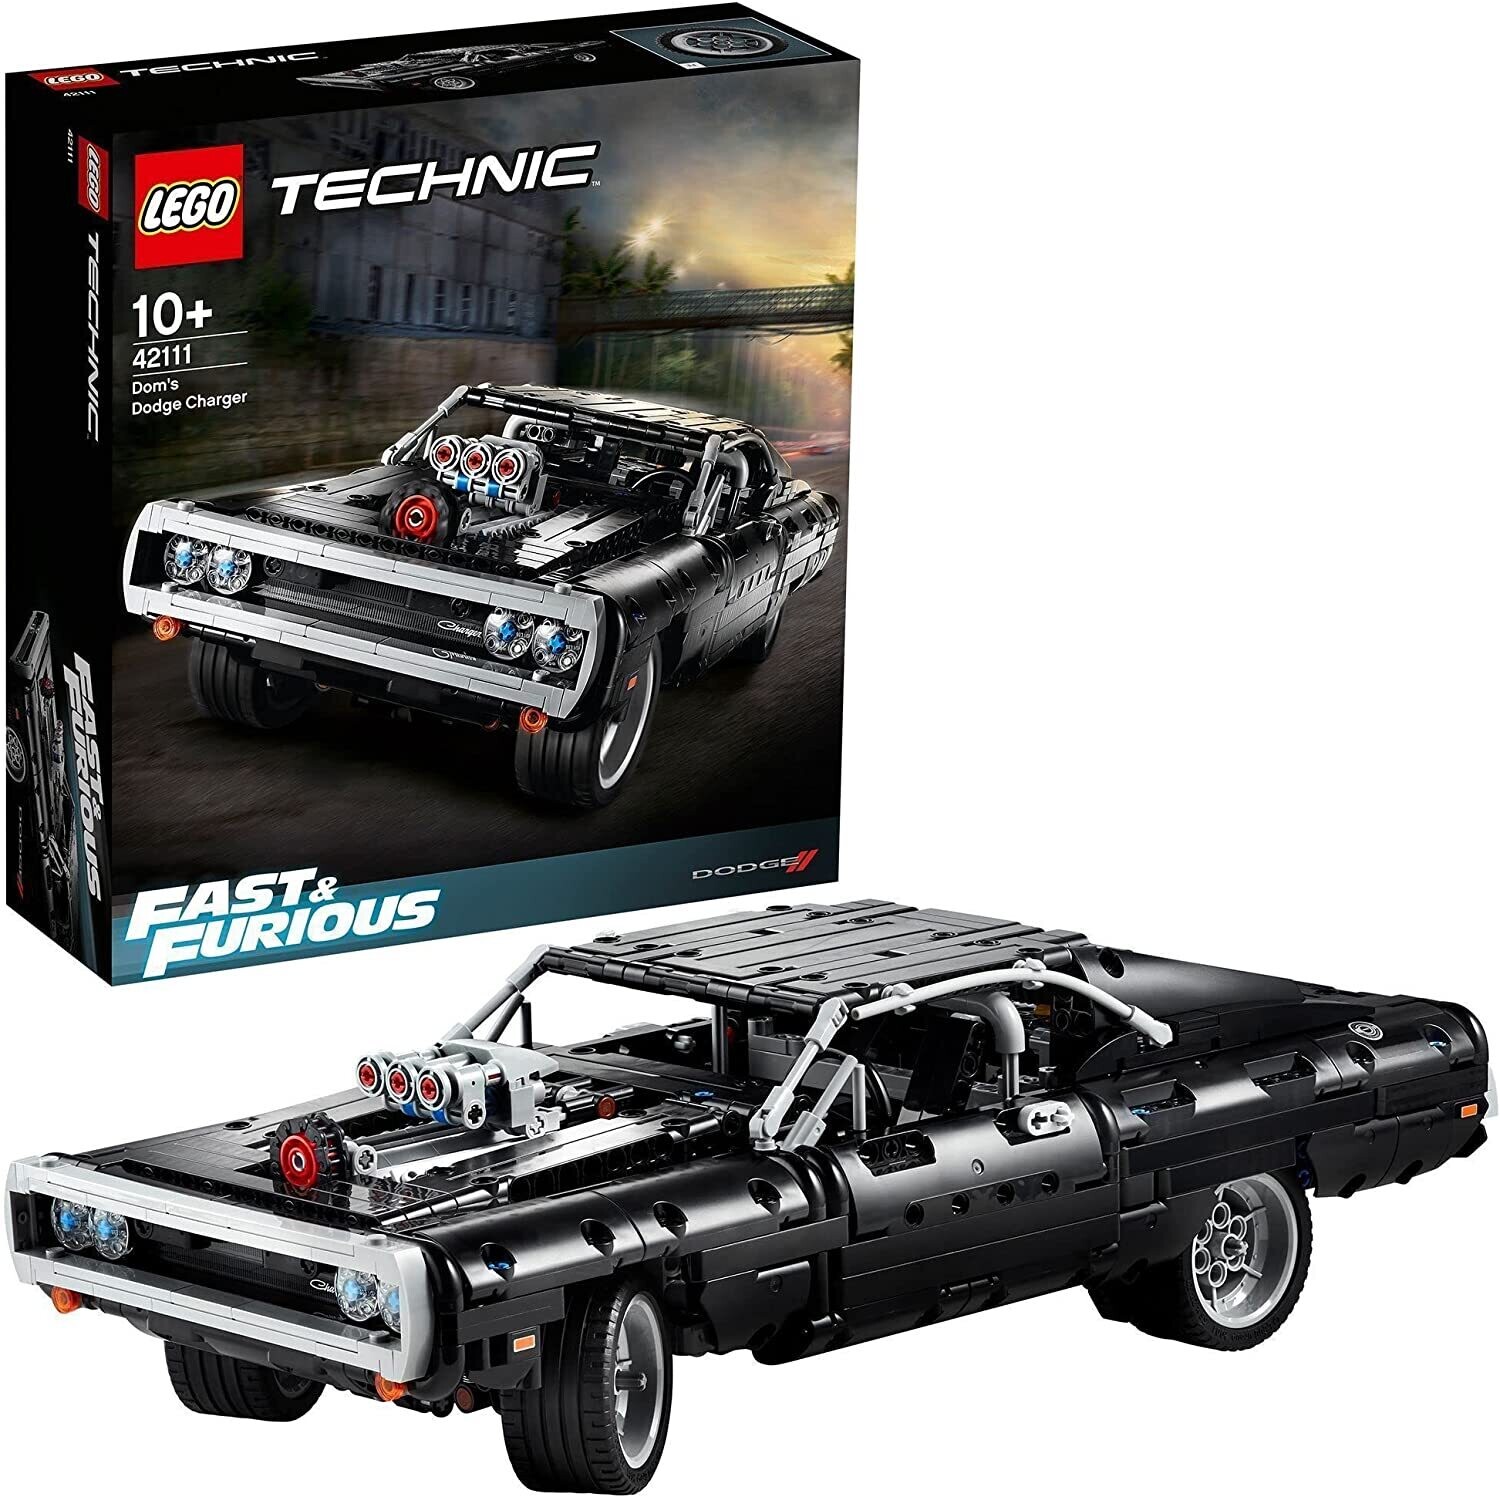 LEGO Technic Dom's Dodge Charger, Modellini Macchine da Corsa Fast &  Furious, Idea Regalo Originale con Auto da Costruire, 42111